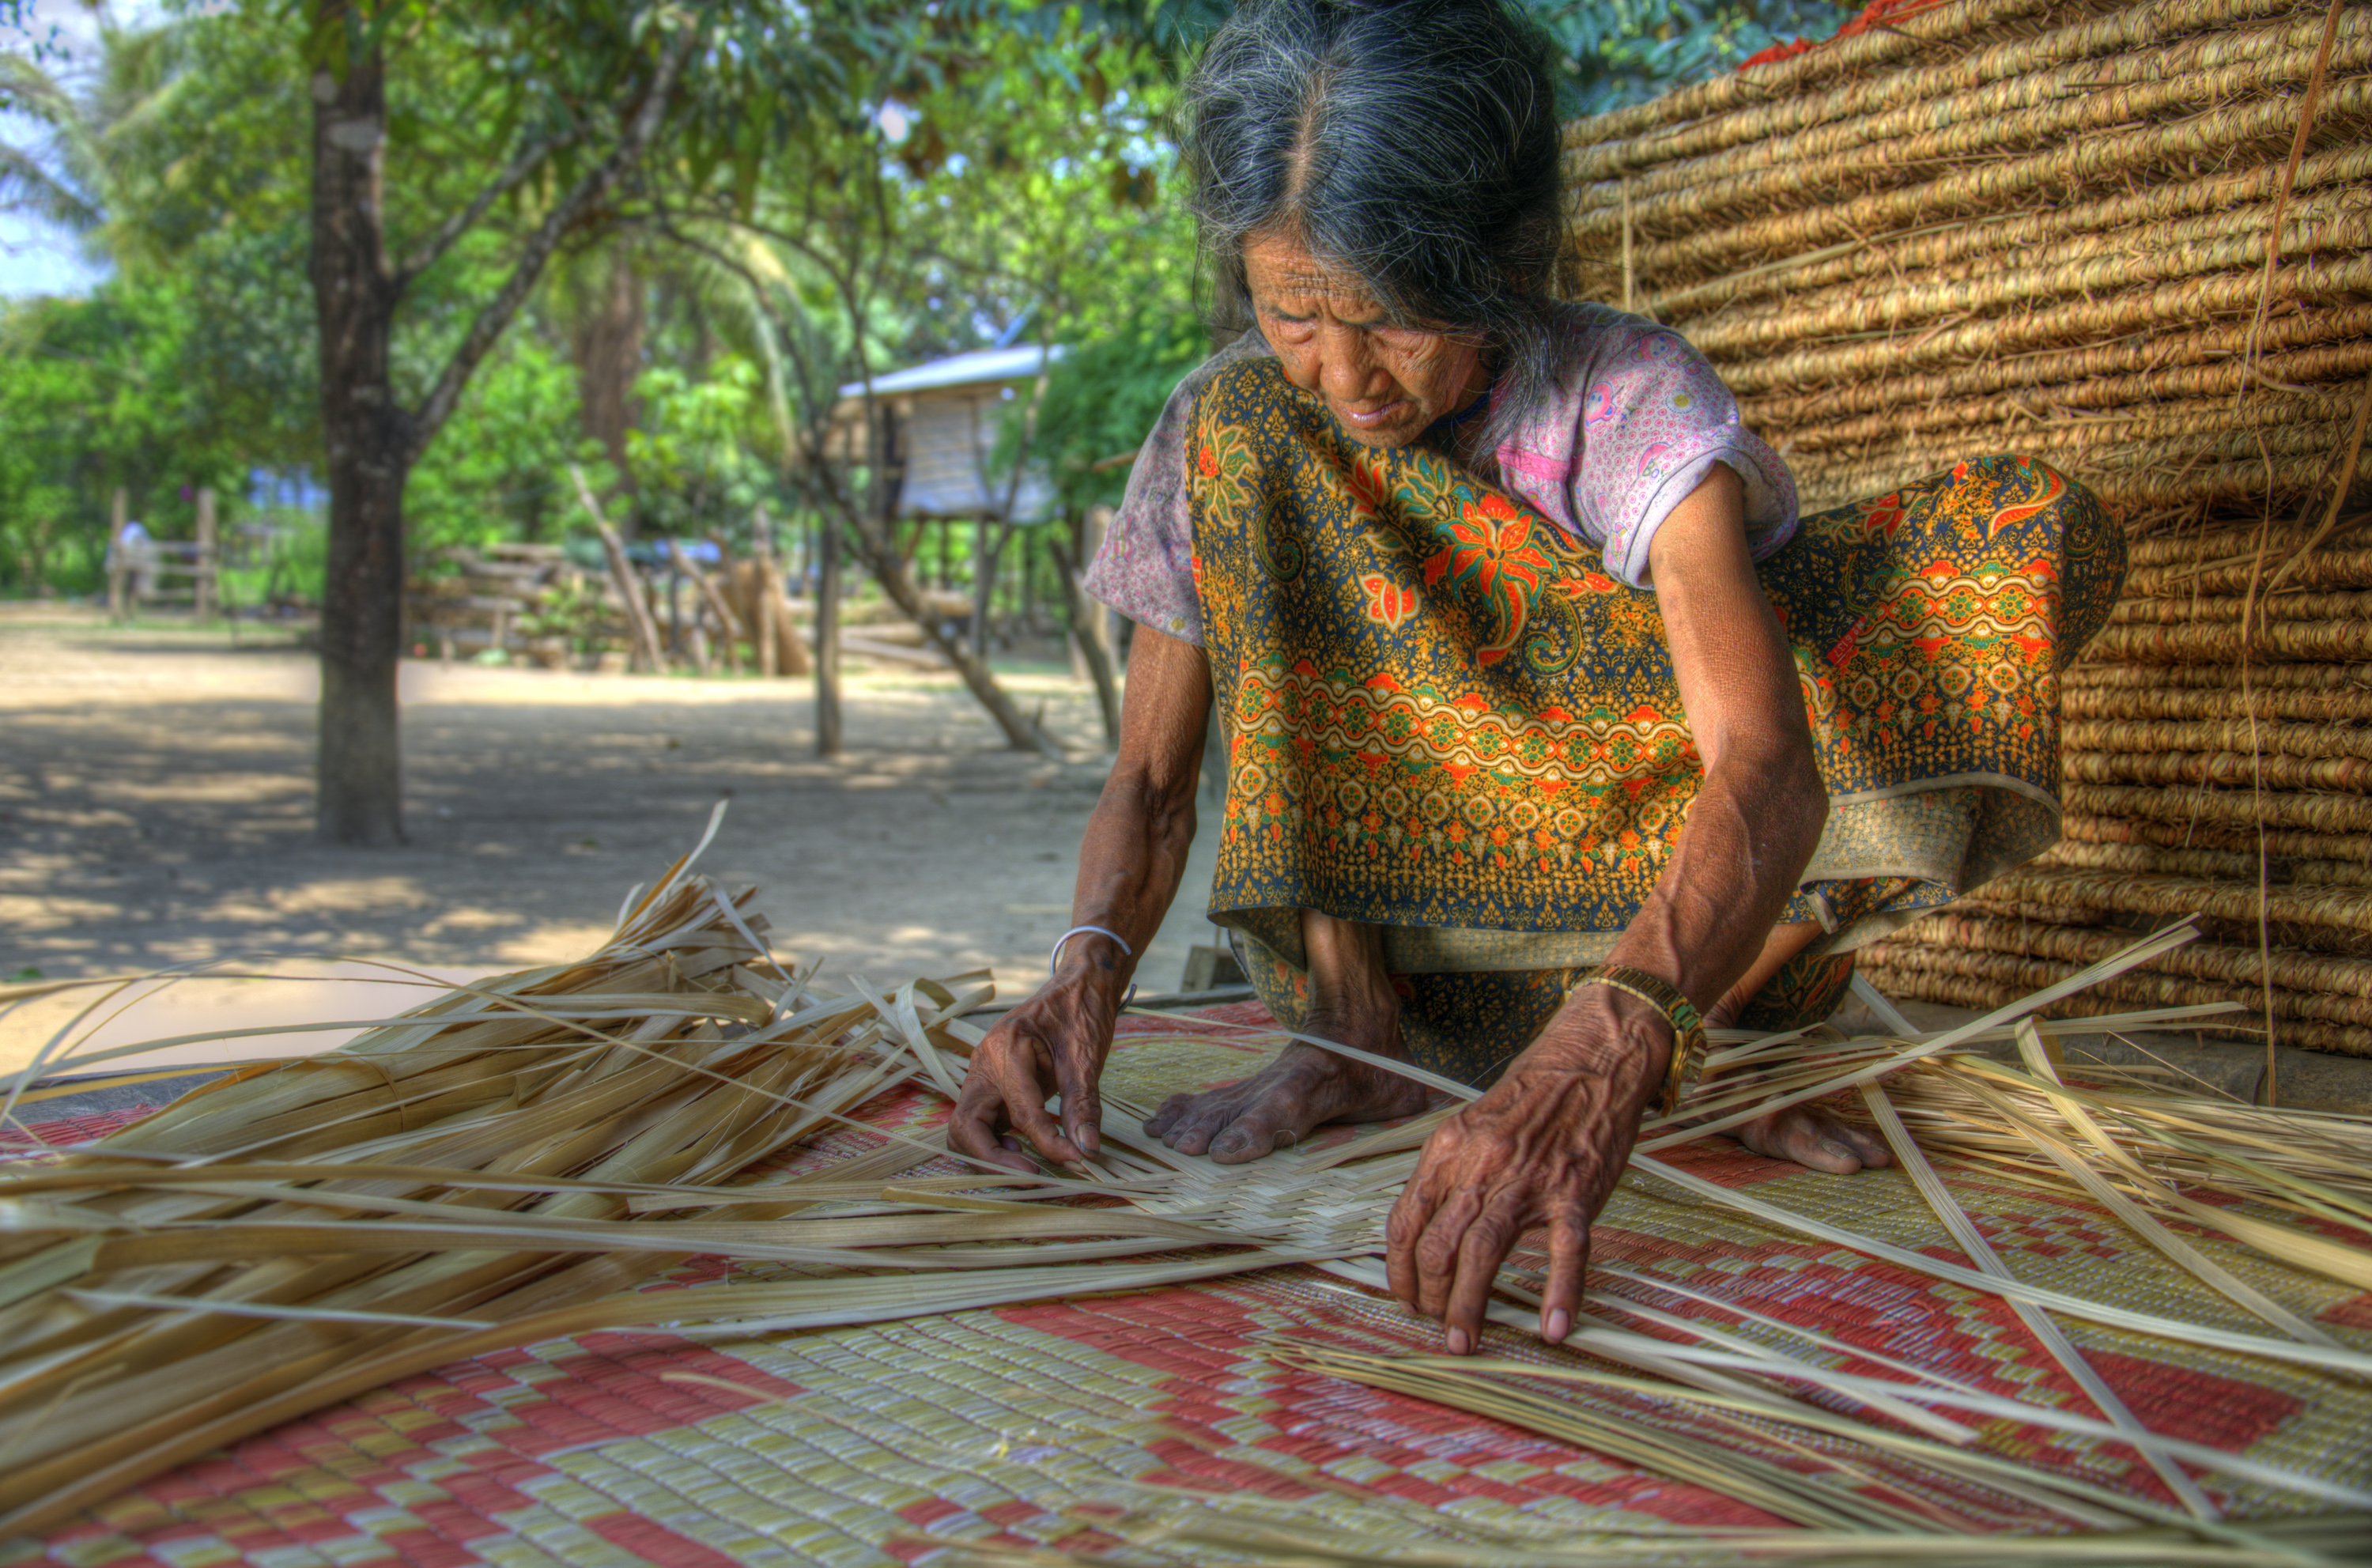 Hilltribe Brao woman weaving a sleeping mat by hand